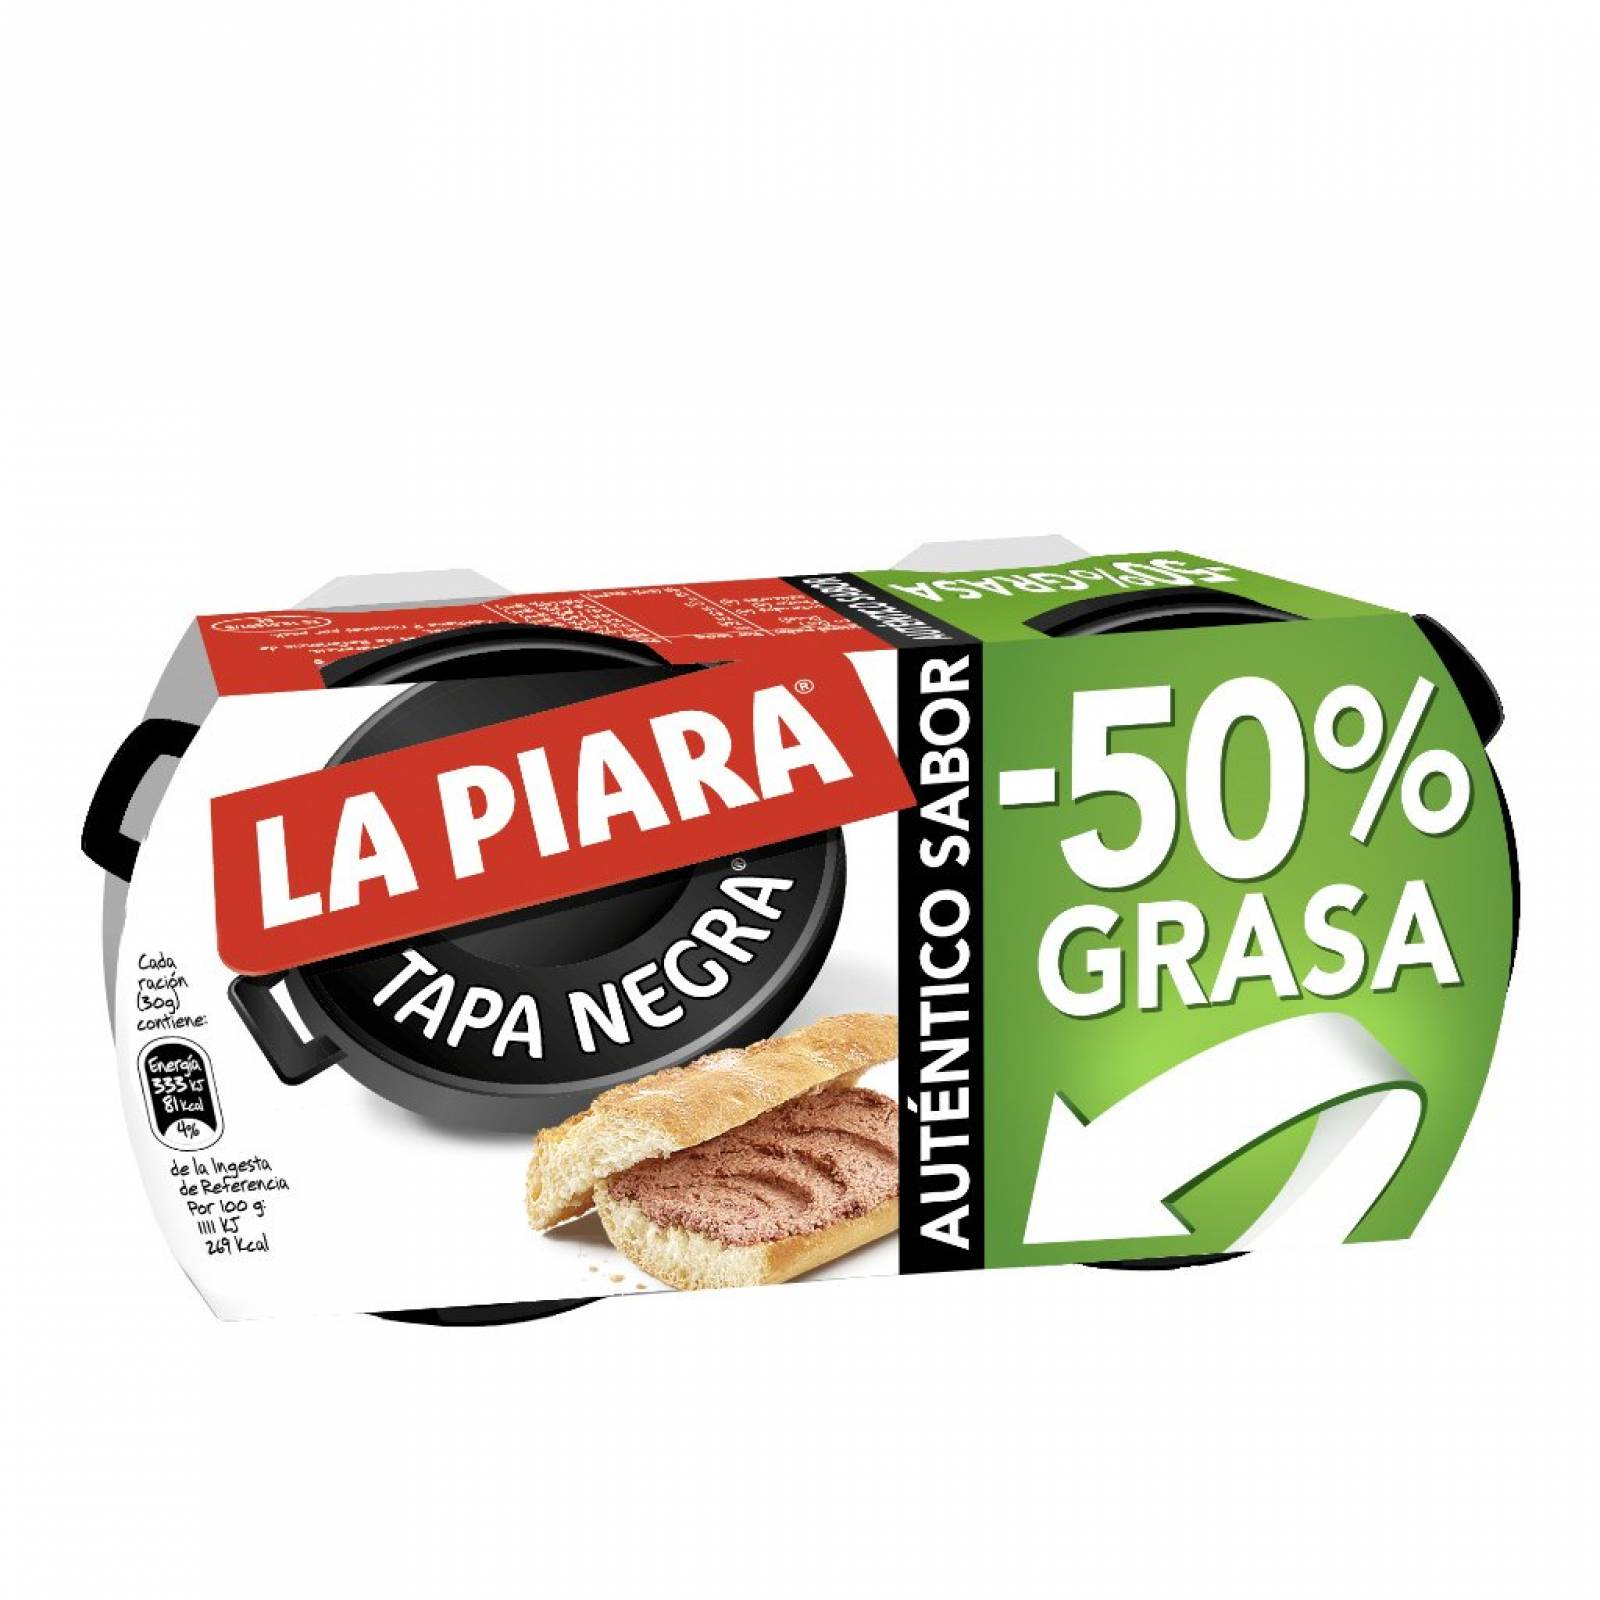 Paté La Piara de hígado de cerdo Tapa Negra  50% grasa pack 2 146 g